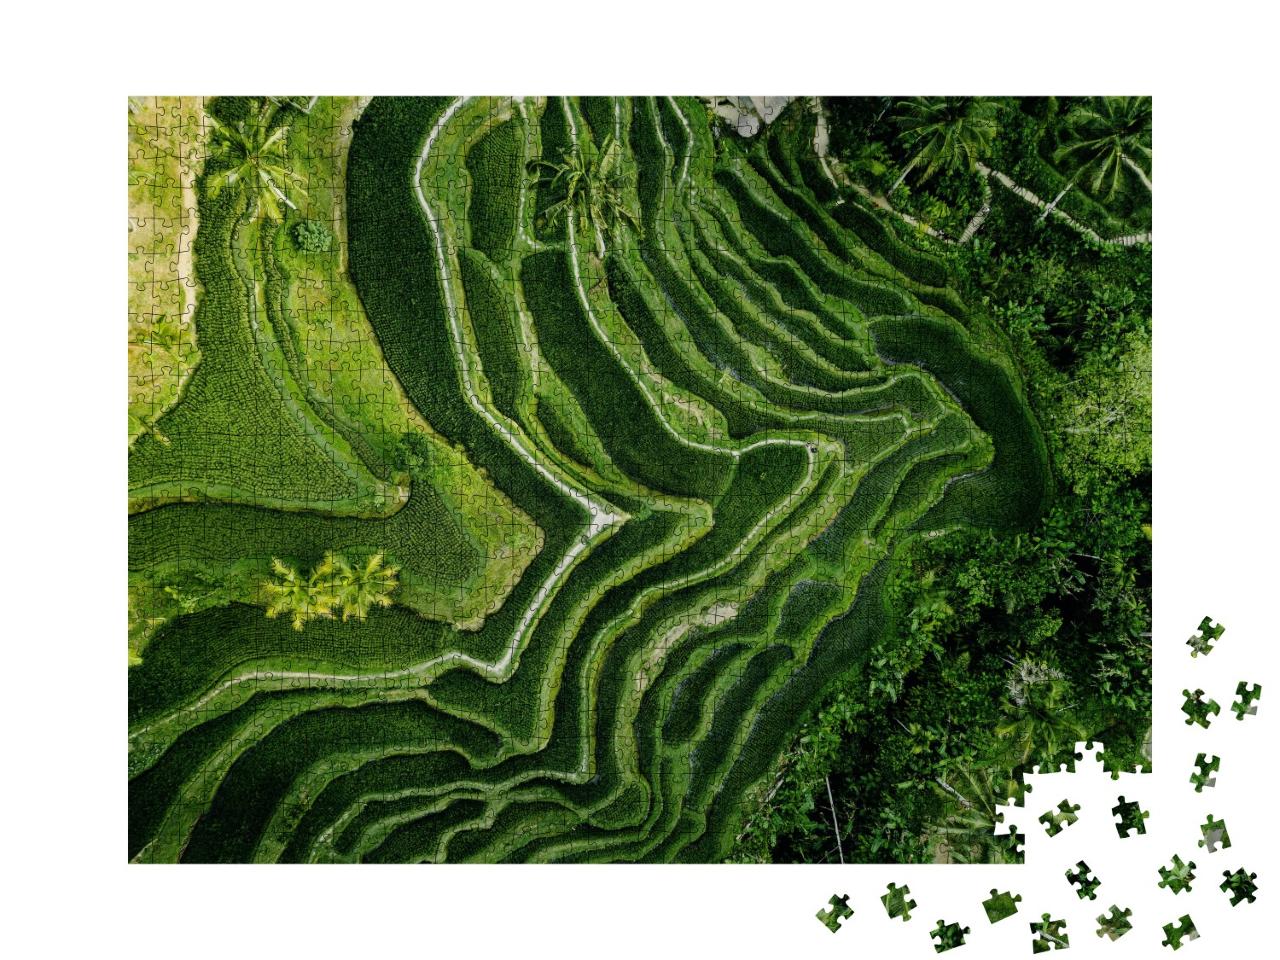 Puzzle de 1000 pièces « Plantation de riz à Bali vue d'en haut, Indonésie »